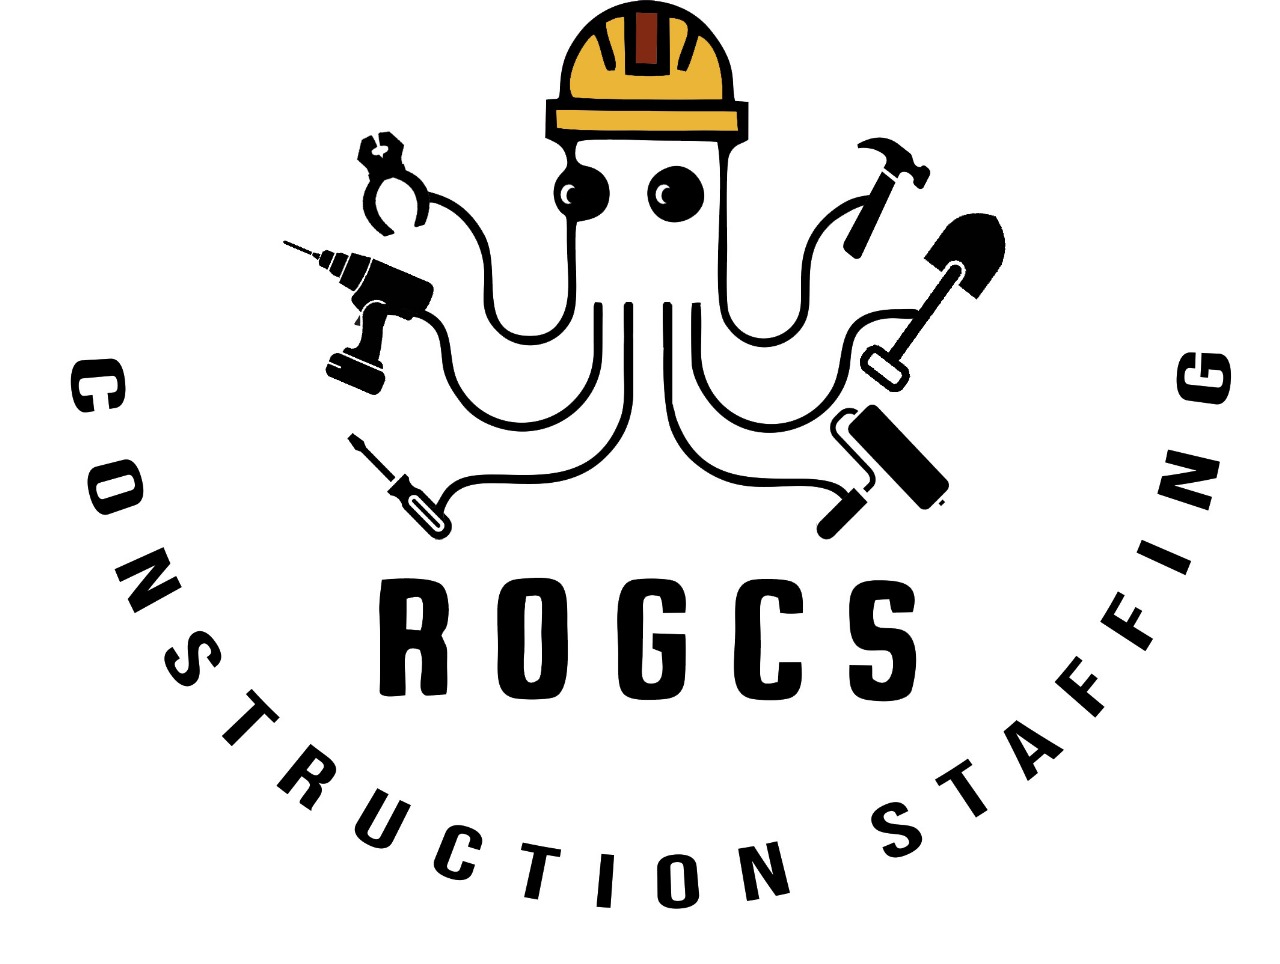 ROGCS Construction Services Ltd